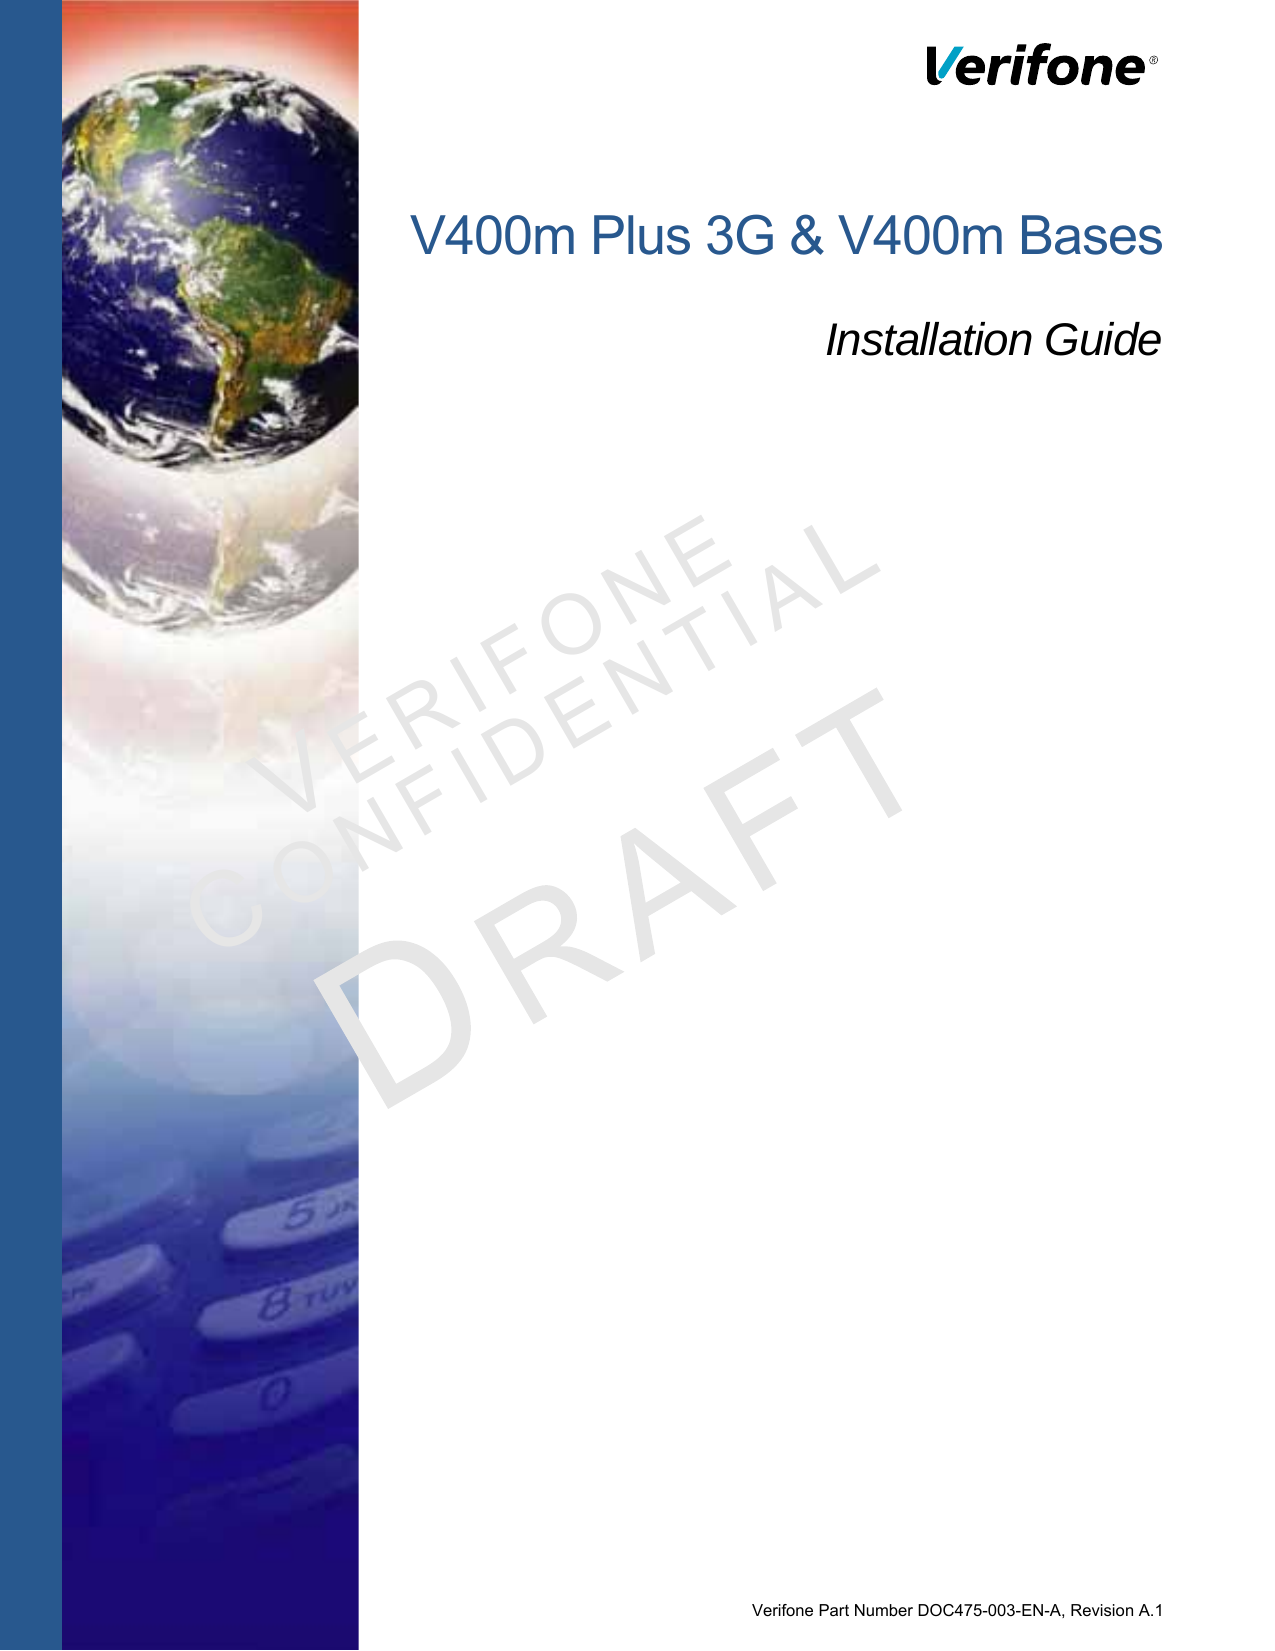 Verifone Part Number DOC475-003-EN-A, Revision A.1VERI F O N ECONF I DENTIALV400m Plus 3G &amp; V400m BasesInstallation Guide